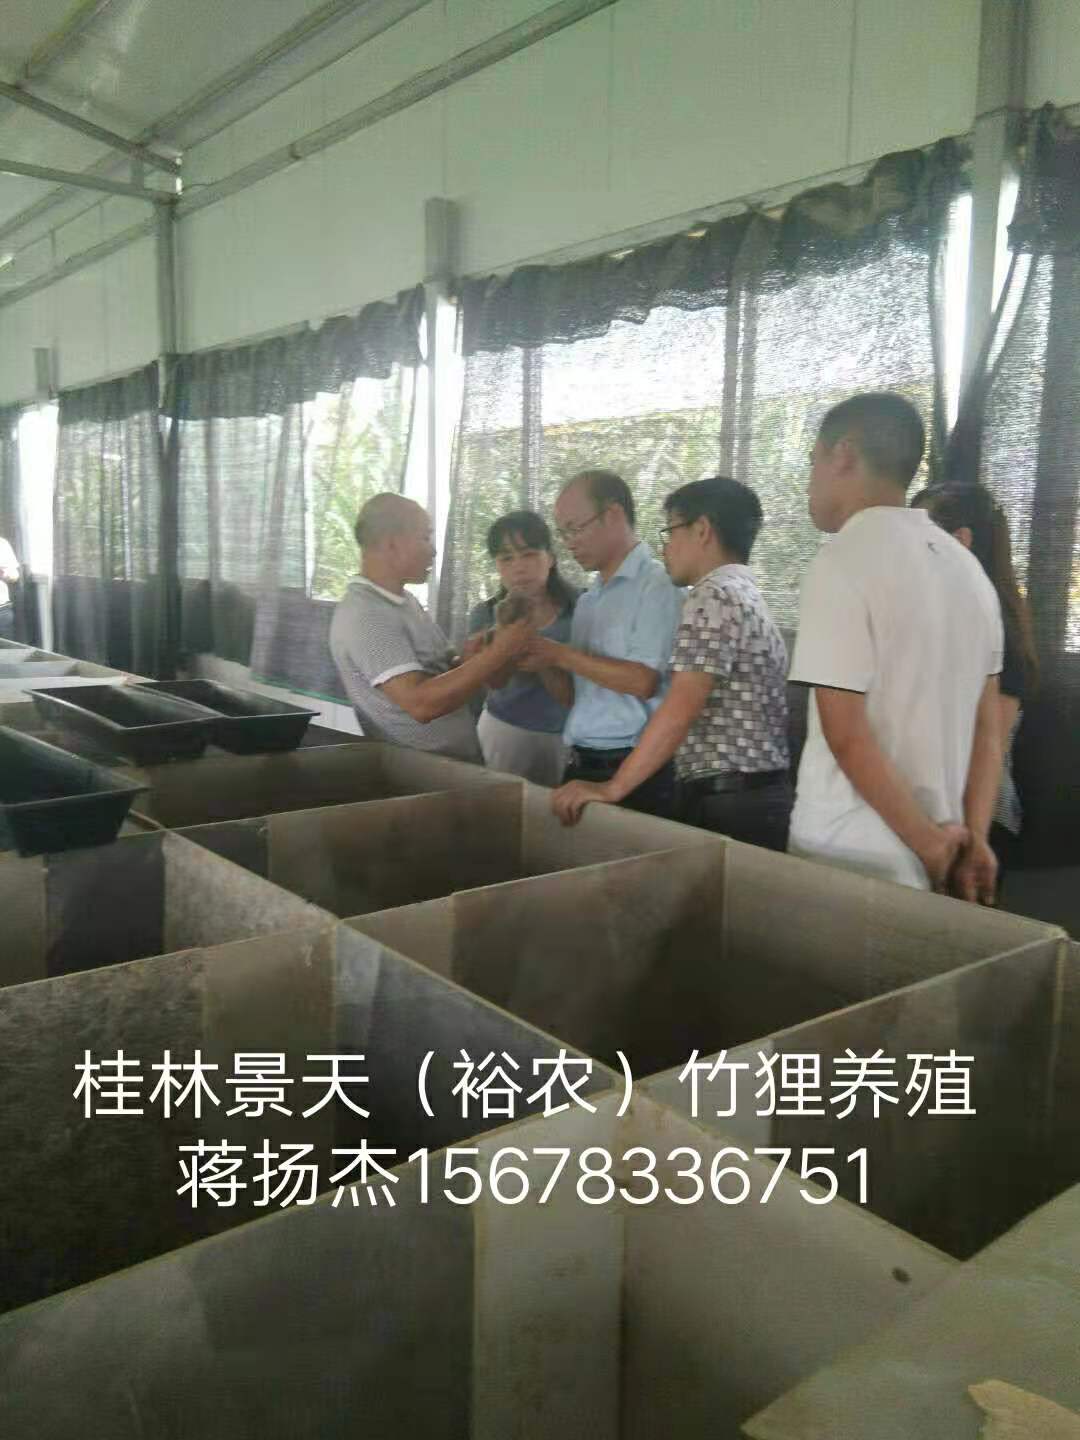 竹鼠养殖专业合作社-广西桂林竹鼠养殖交流图片